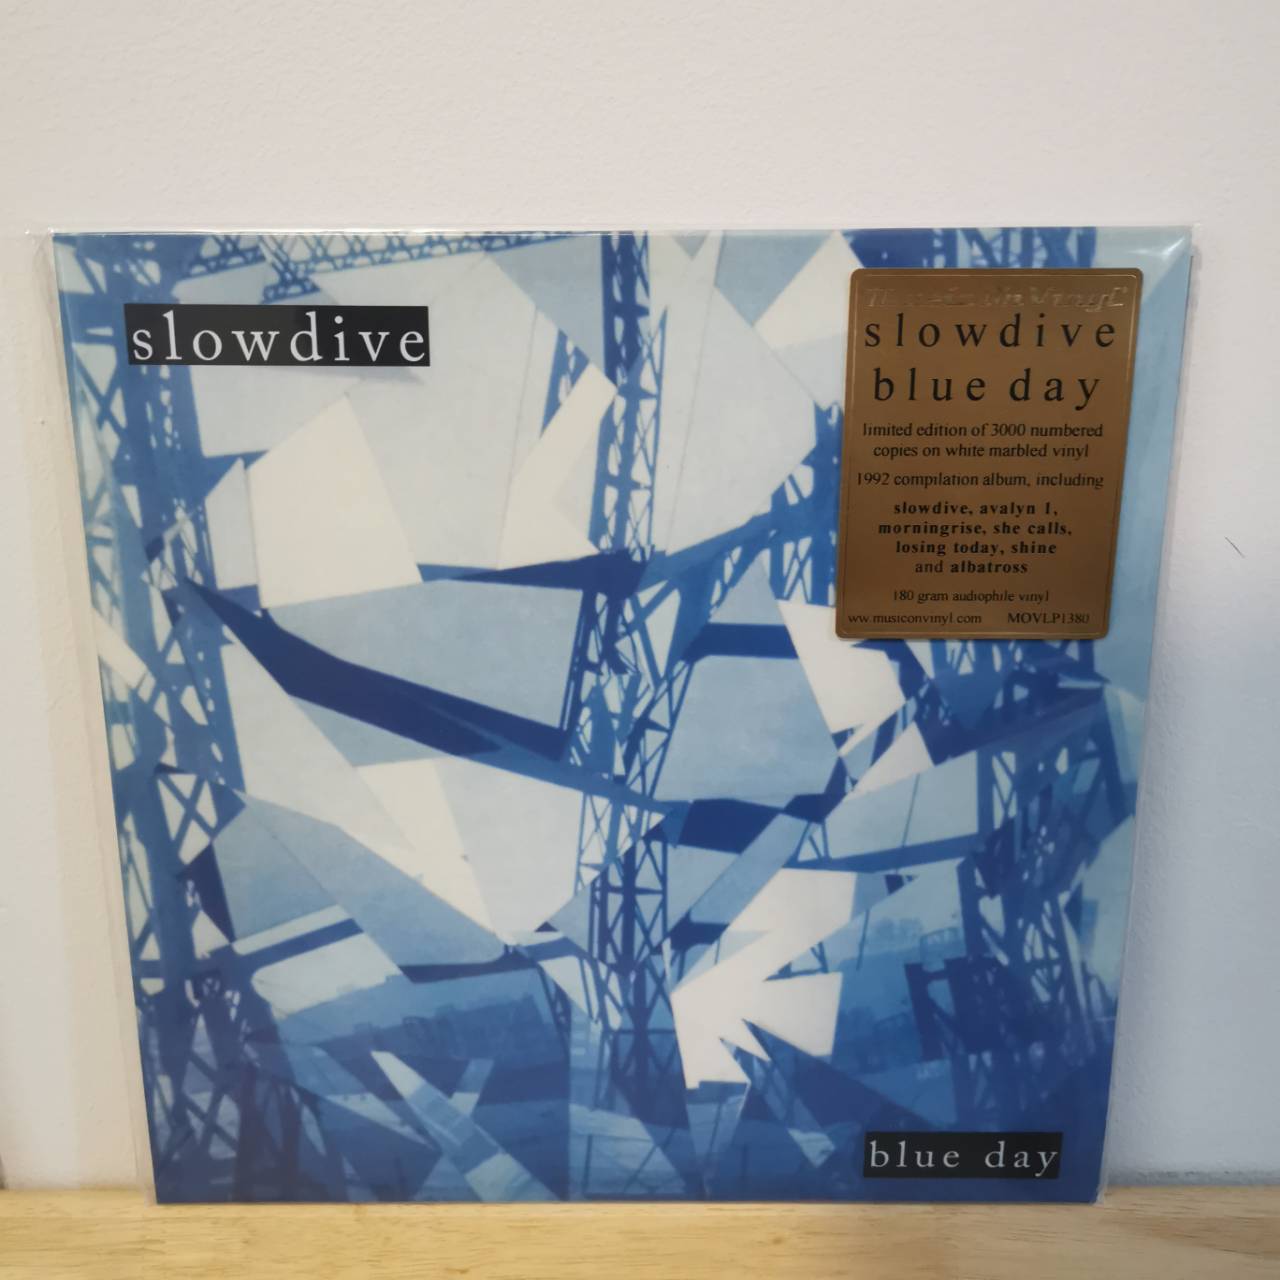 แผ่นเสียง Slowdiv​e : blue day *limited​ White Mable​d colour ​vinyl แผ่นเสียงใหม่ซีล